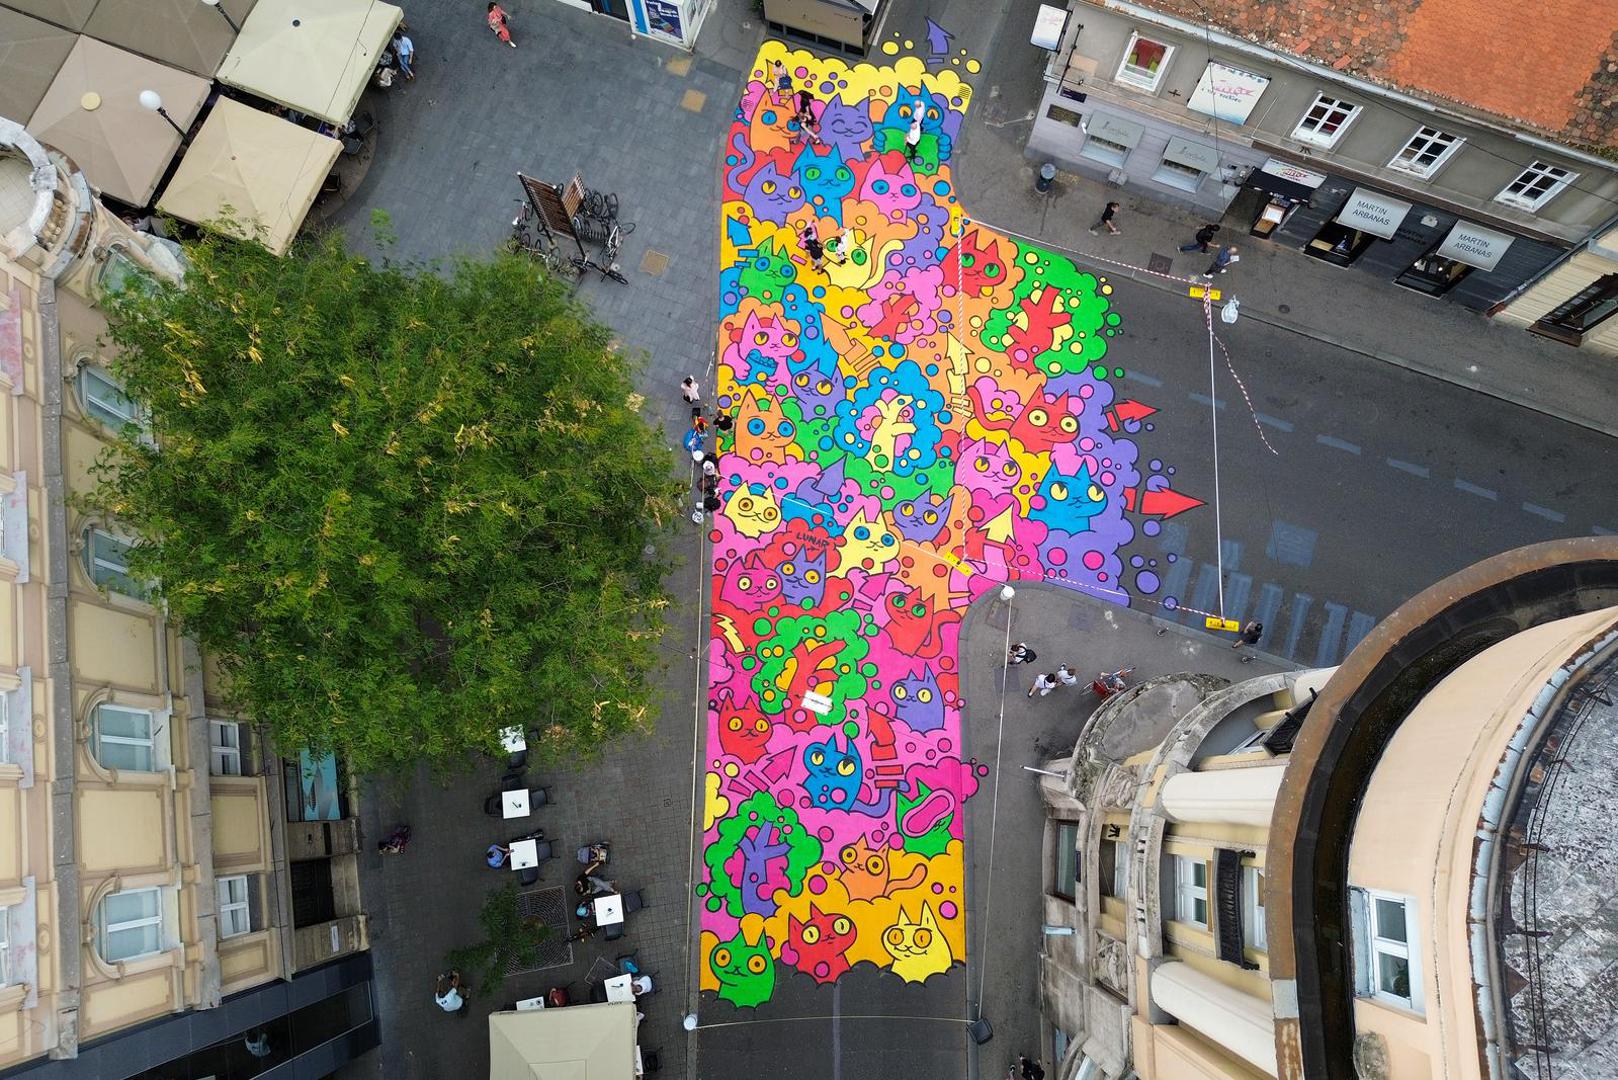 Preuređenje dijela Martićeve dio je inicijative "Asphalt Art Initiative"– proširenje pješačke zone u centru grada Zagreba.